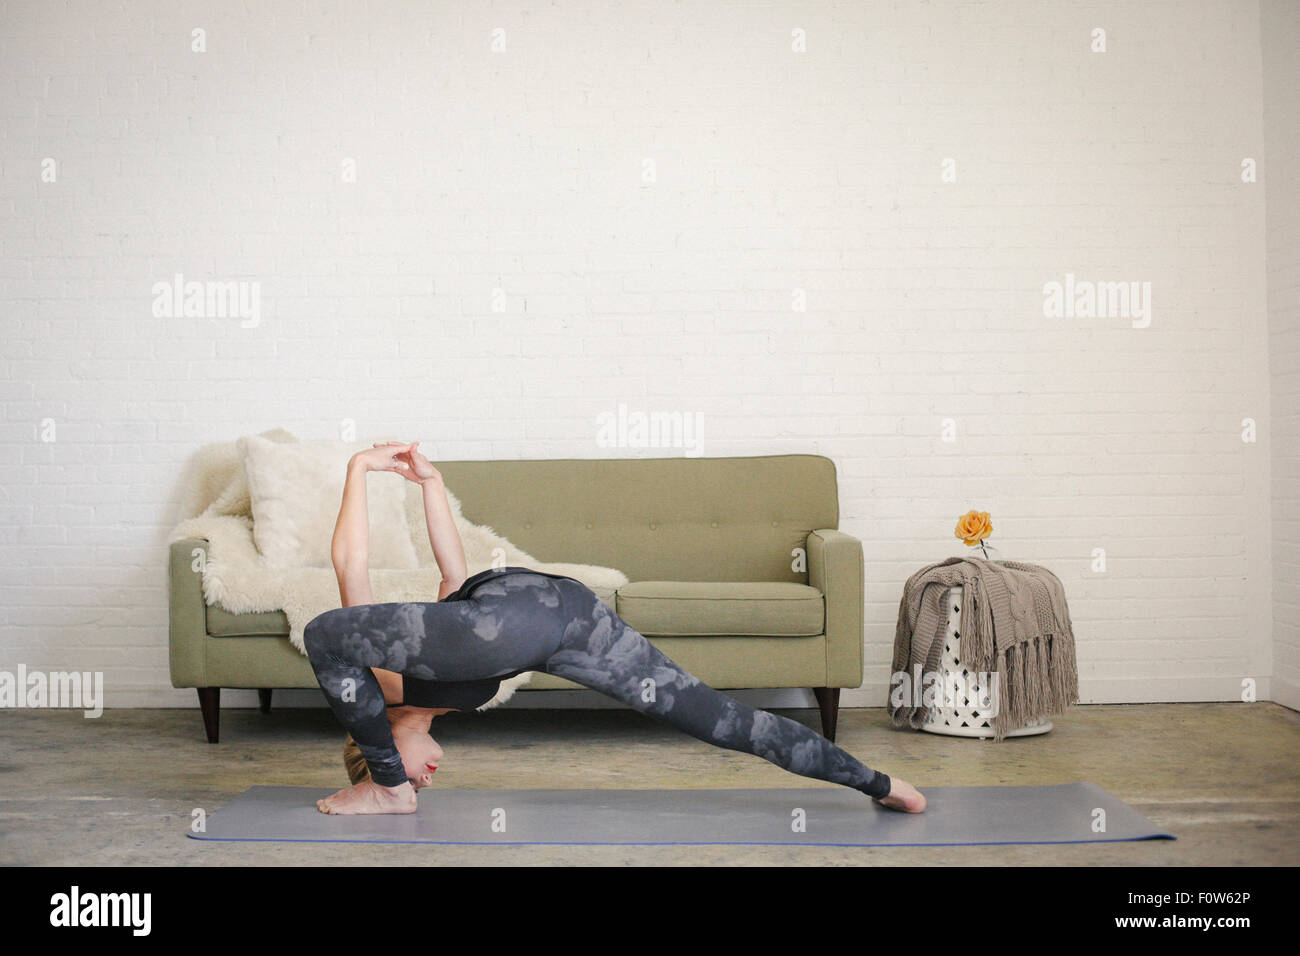 Una donna bionda in un nero leotard e gambali, in piedi su un materassino yoga in una stanza, fare yoga, la sua gambe divaricate e braccia alzate. Foto Stock